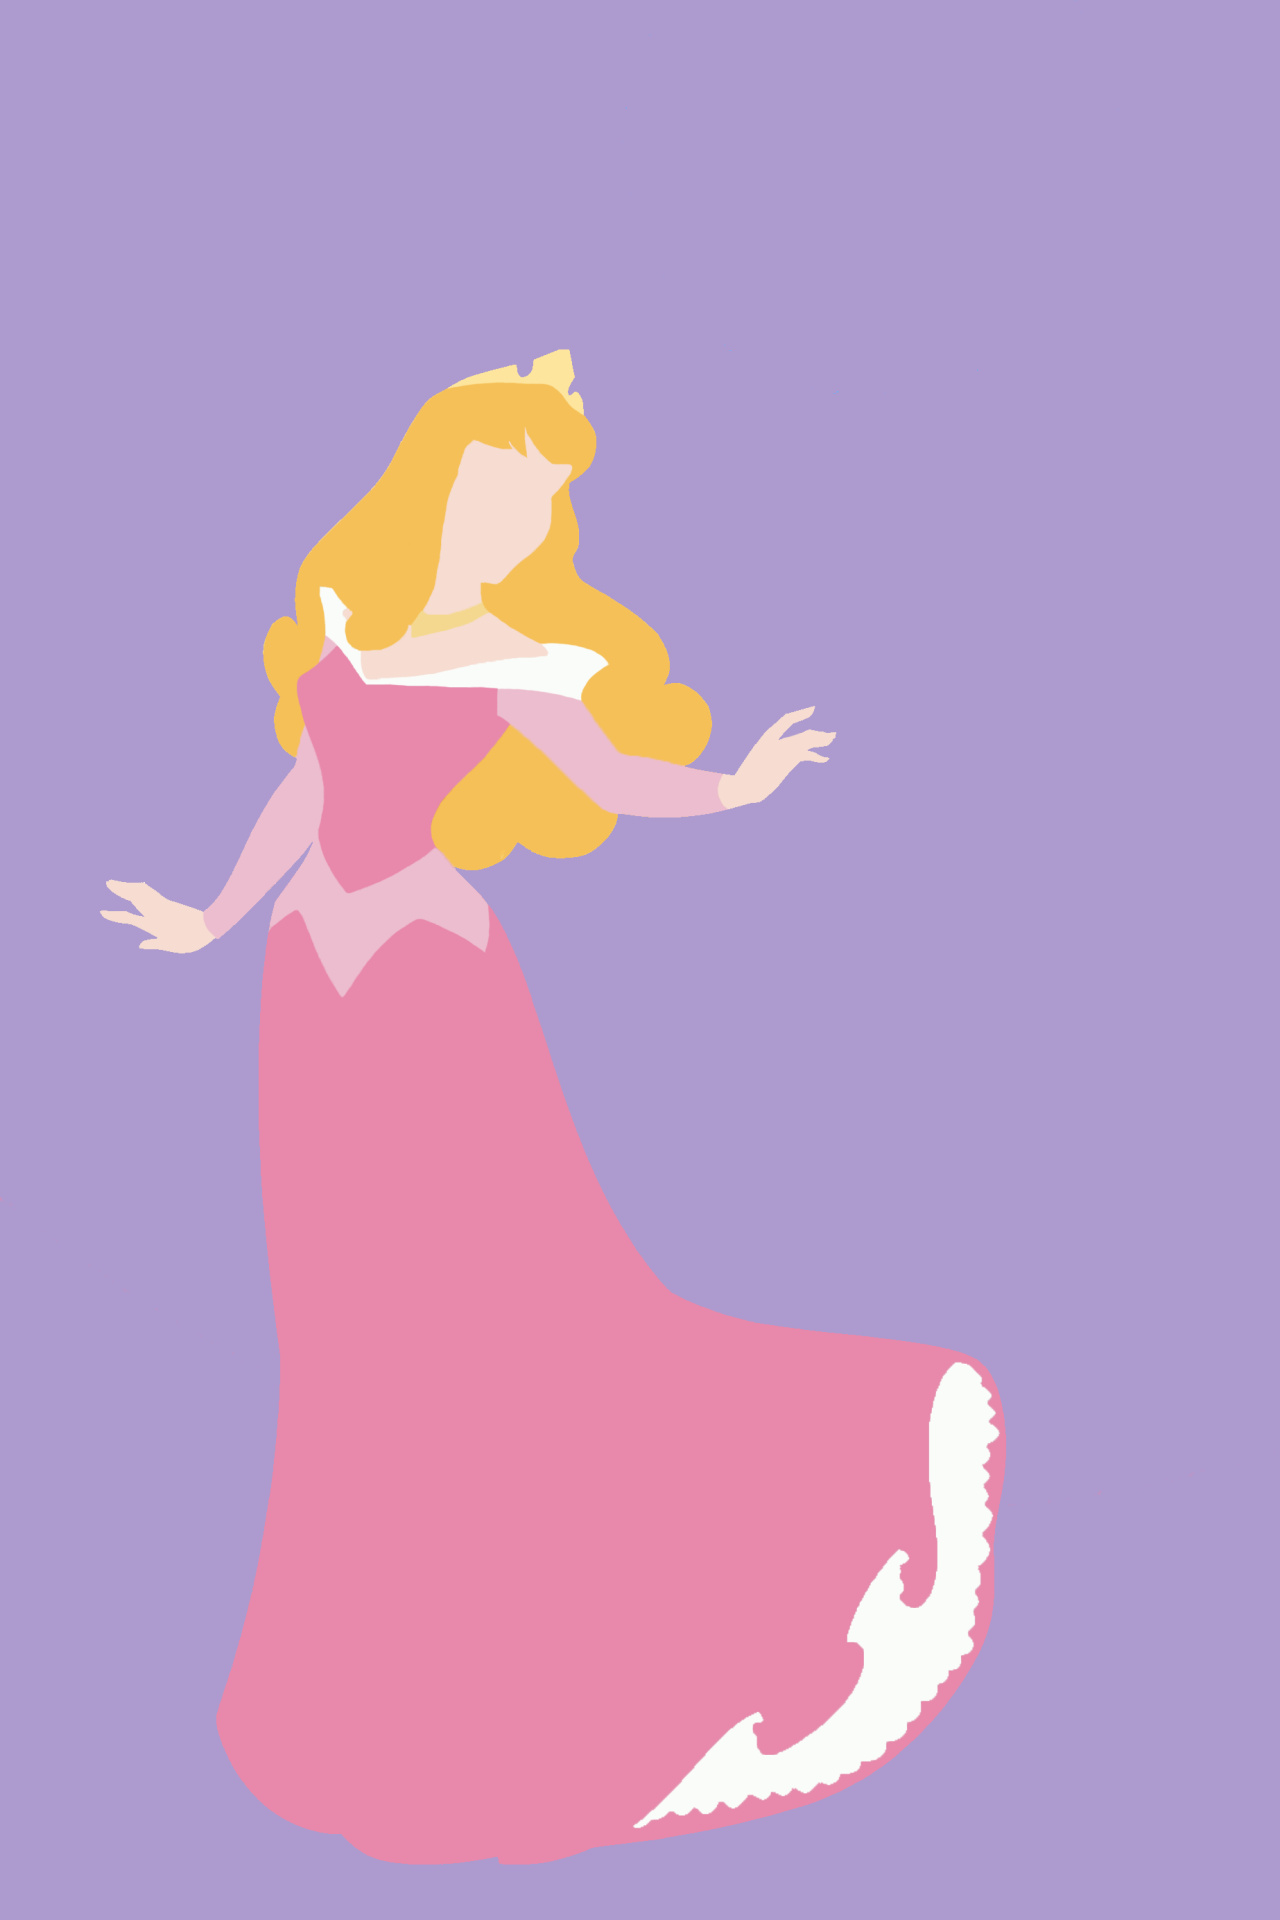 Sleeping Beauty, Disney princess, Minimalistic iPhone wallpaper, Cute Disney, 1280x1920 HD Phone